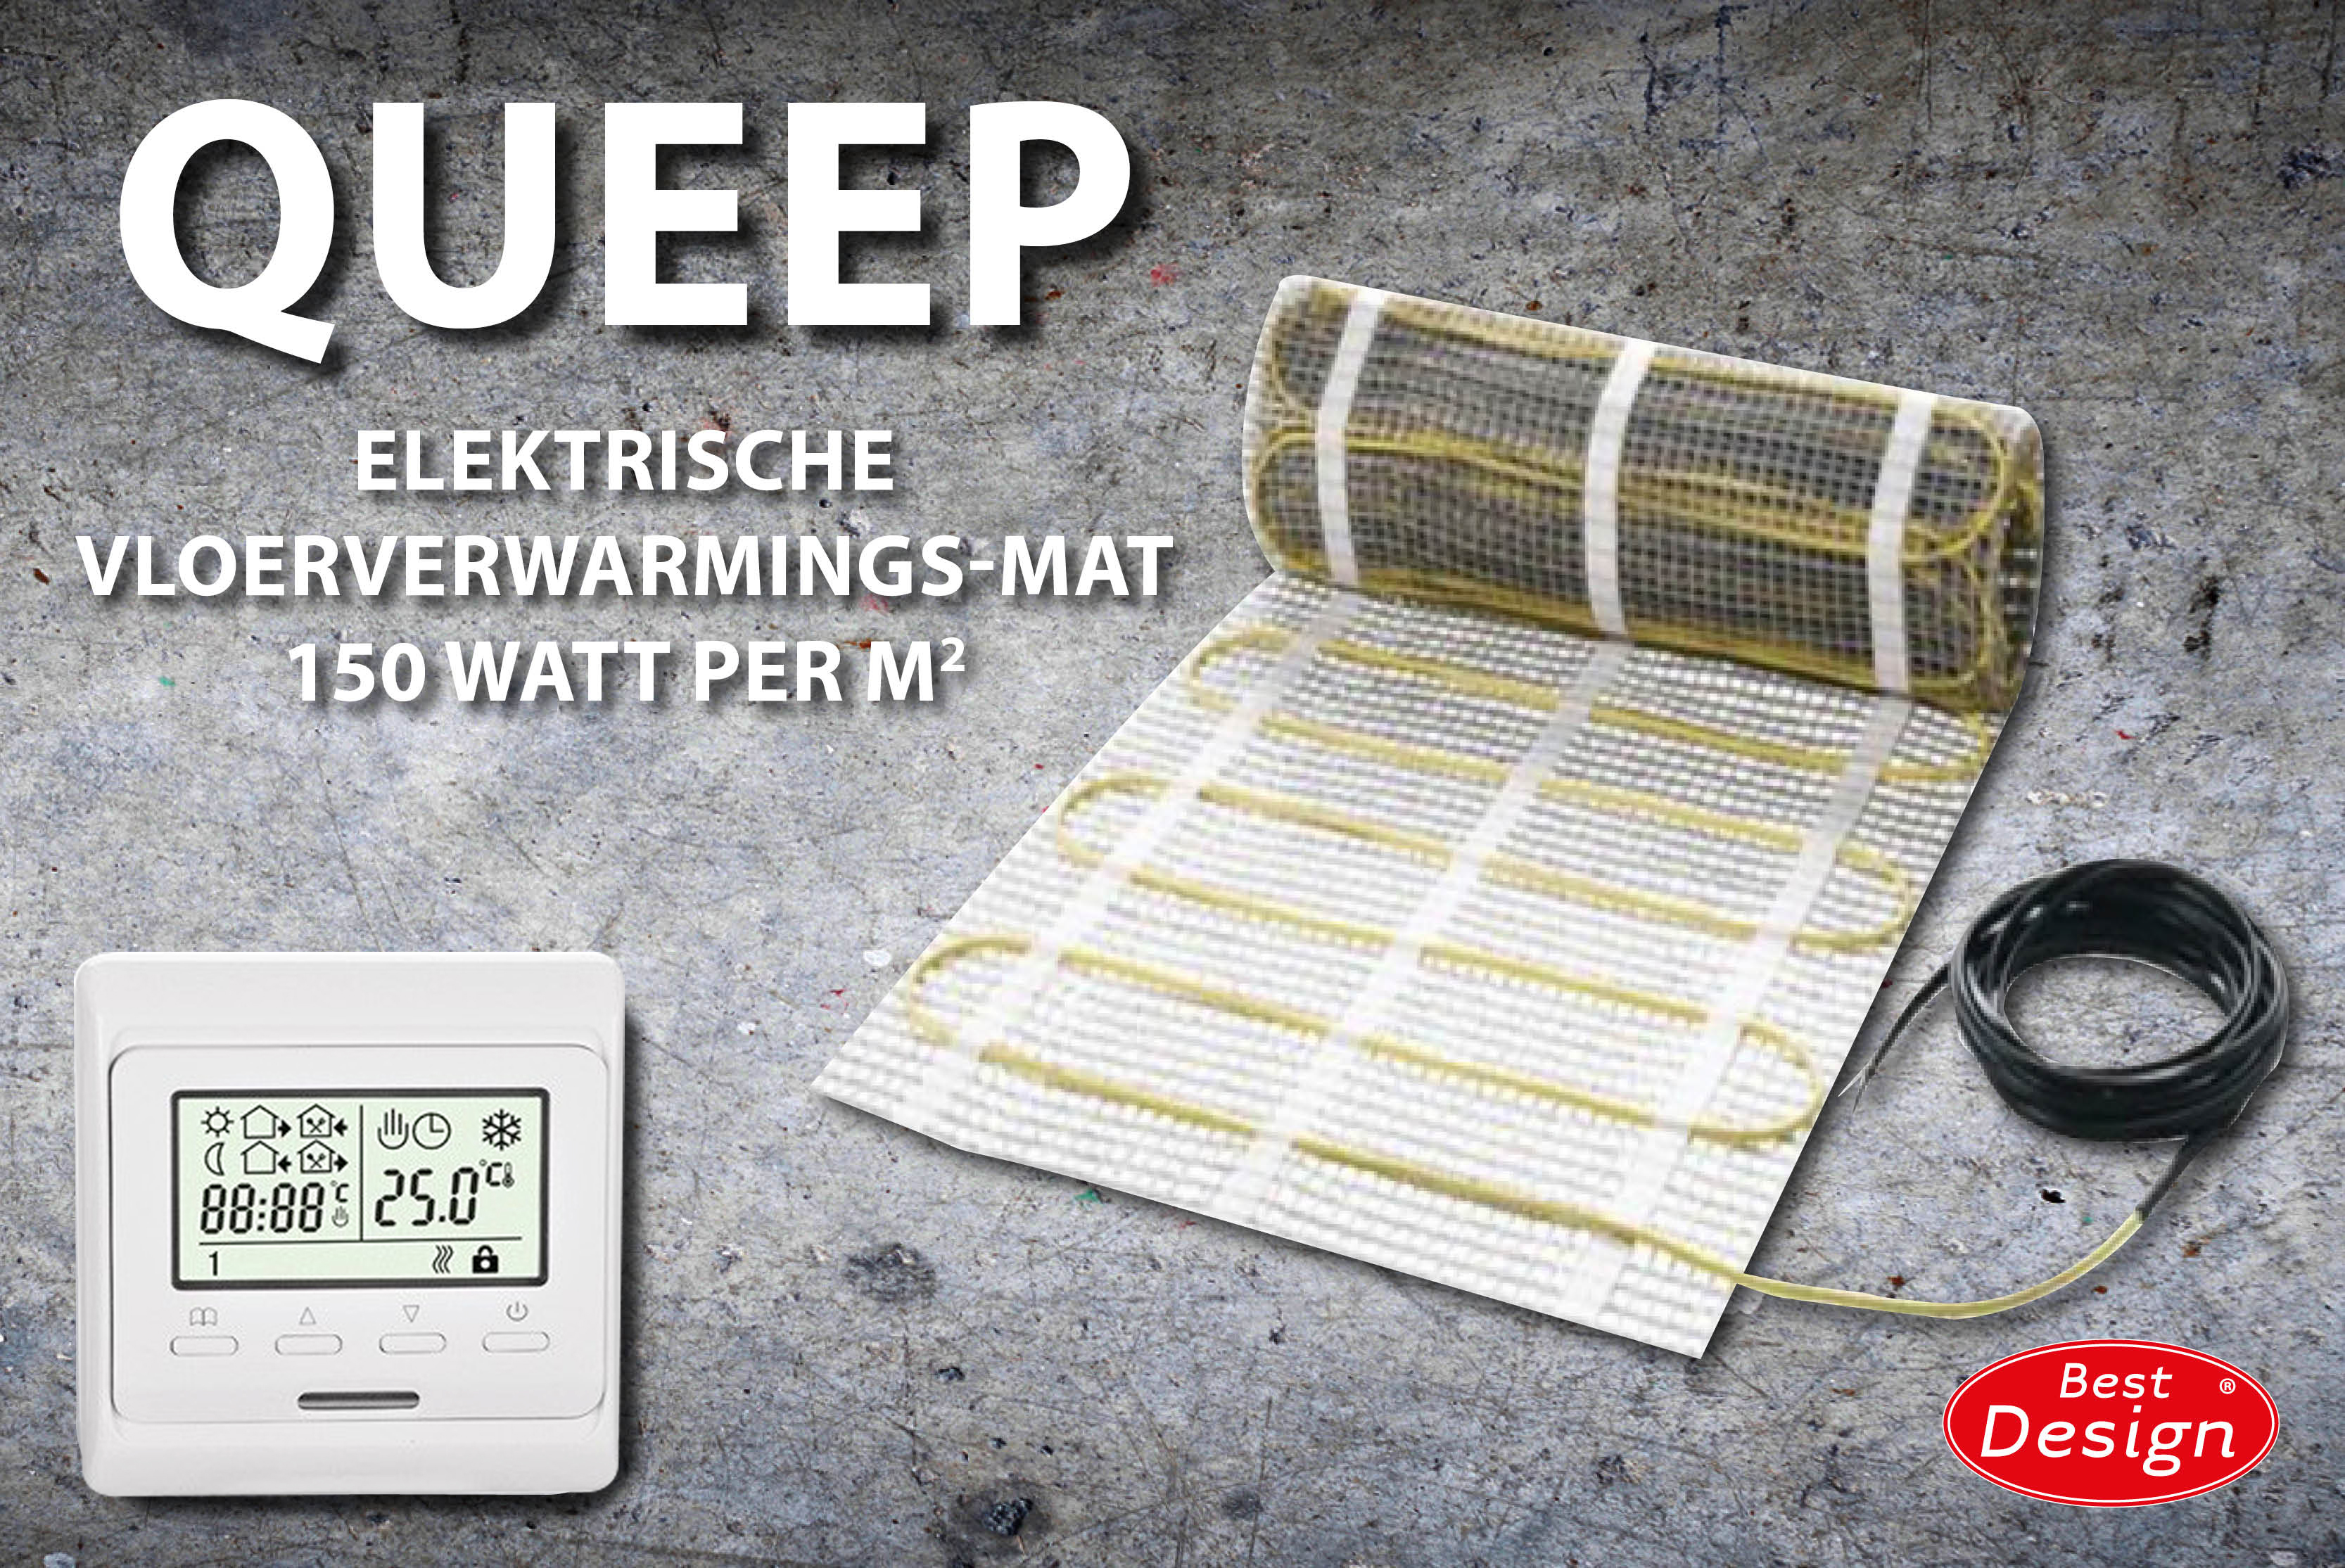 Best-Design Queep elektrische vloerverwarmings-mat 8.0 m2 Top Merken Winkel